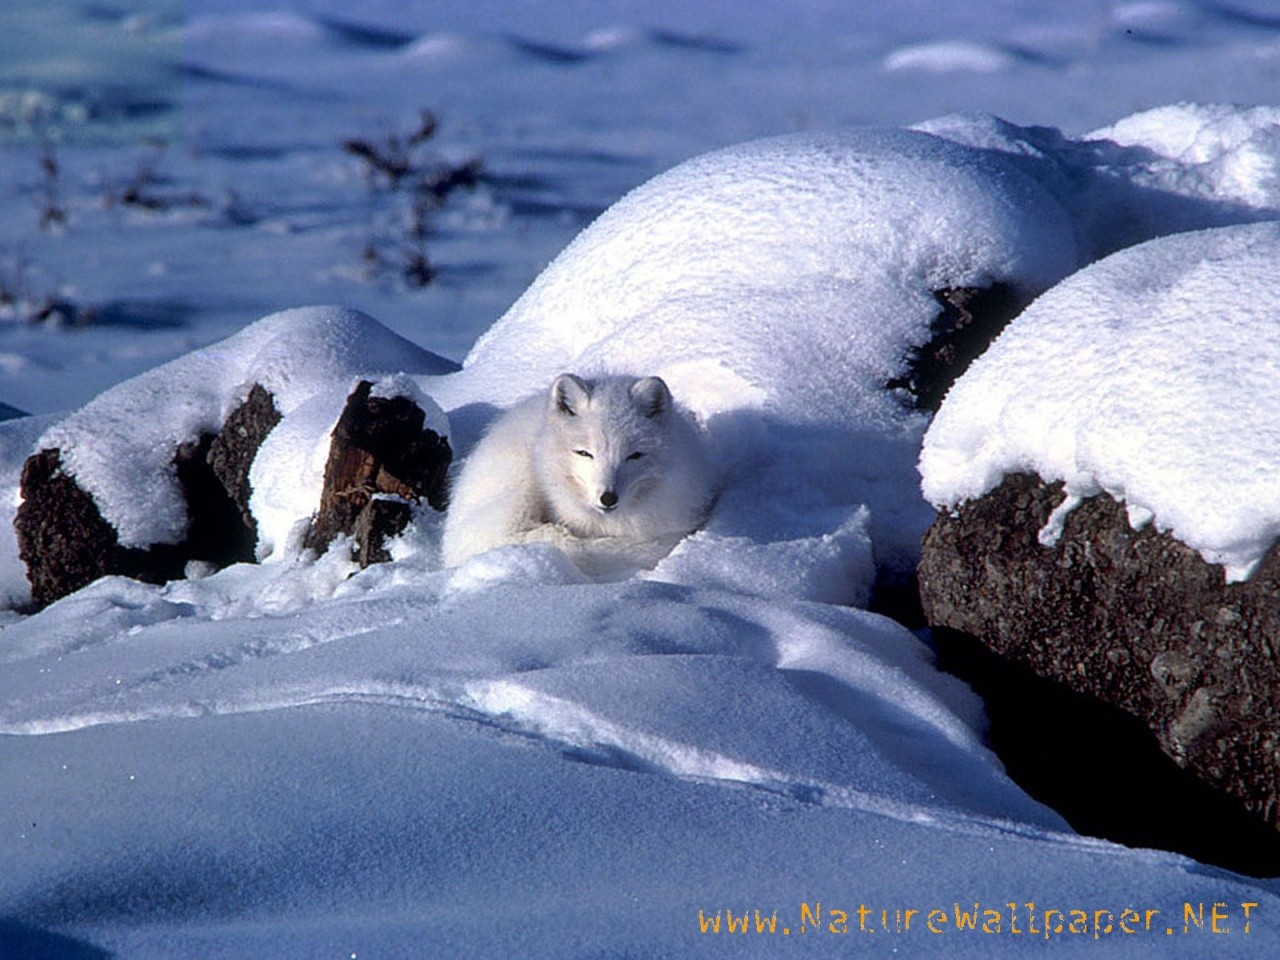 http://2.bp.blogspot.com/-WYIhRoY9JN0/Tv8p4tcqFFI/AAAAAAAACFA/iosExgmgSxc/s1600/Arctic-fox-animal-wallpaper.jpg